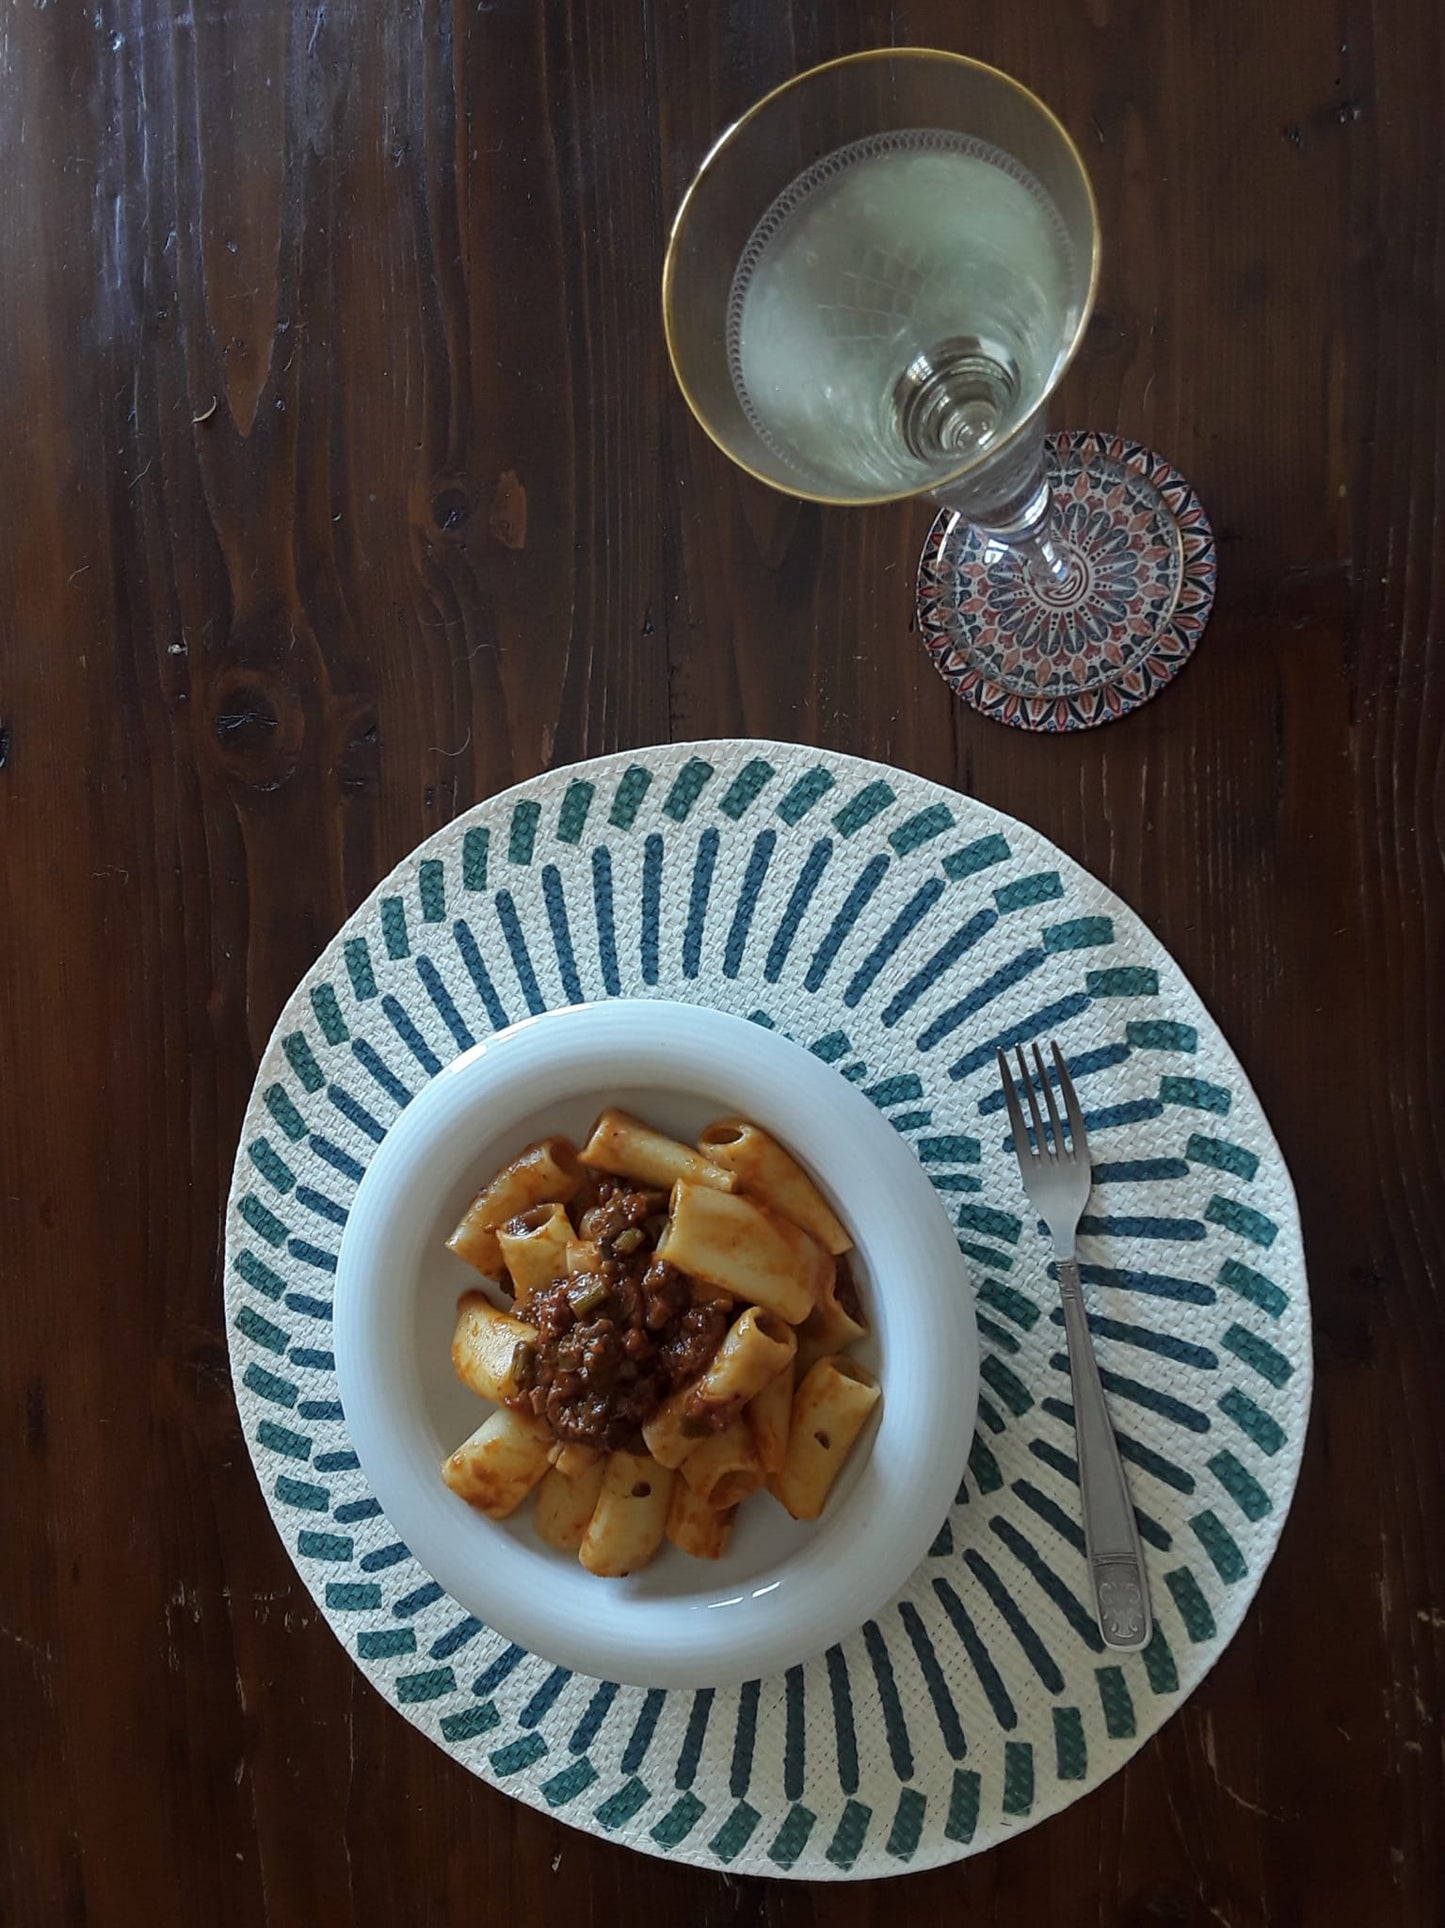 SICILIAN DINNER - Pasta with sicilian sauce